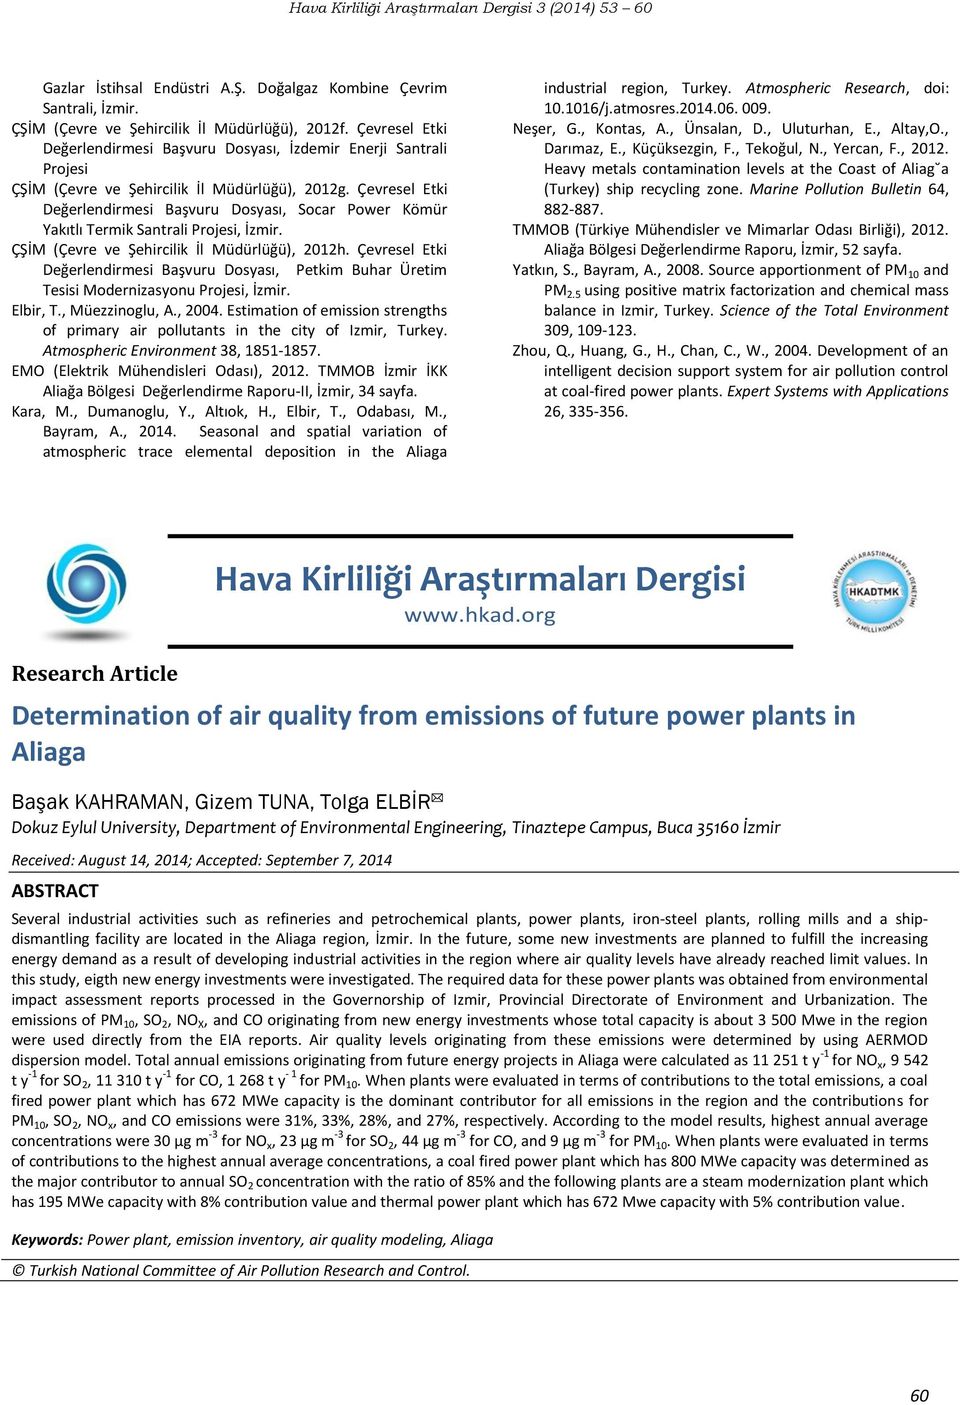 Çevresel Etki Değerlendirmesi Başvuru Dosyası, Socar Power Kömür Yakıtlı Termik Santrali Projesi, İzmir. ÇŞİM (Çevre ve Şehircilik İl Müdürlüğü), 2012h.